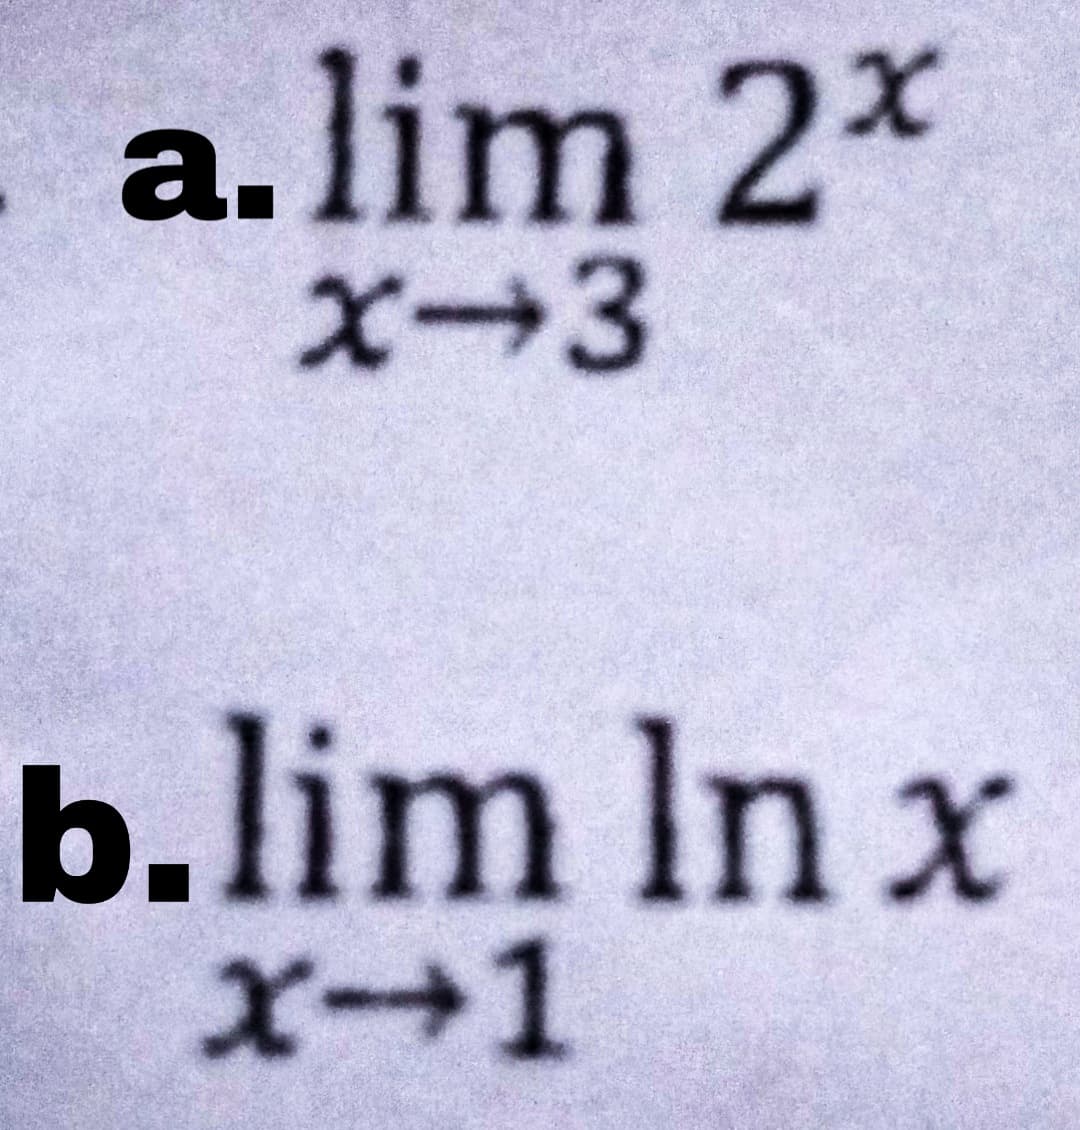 a.lim 2*
X-3
b.lim In x
X-1
